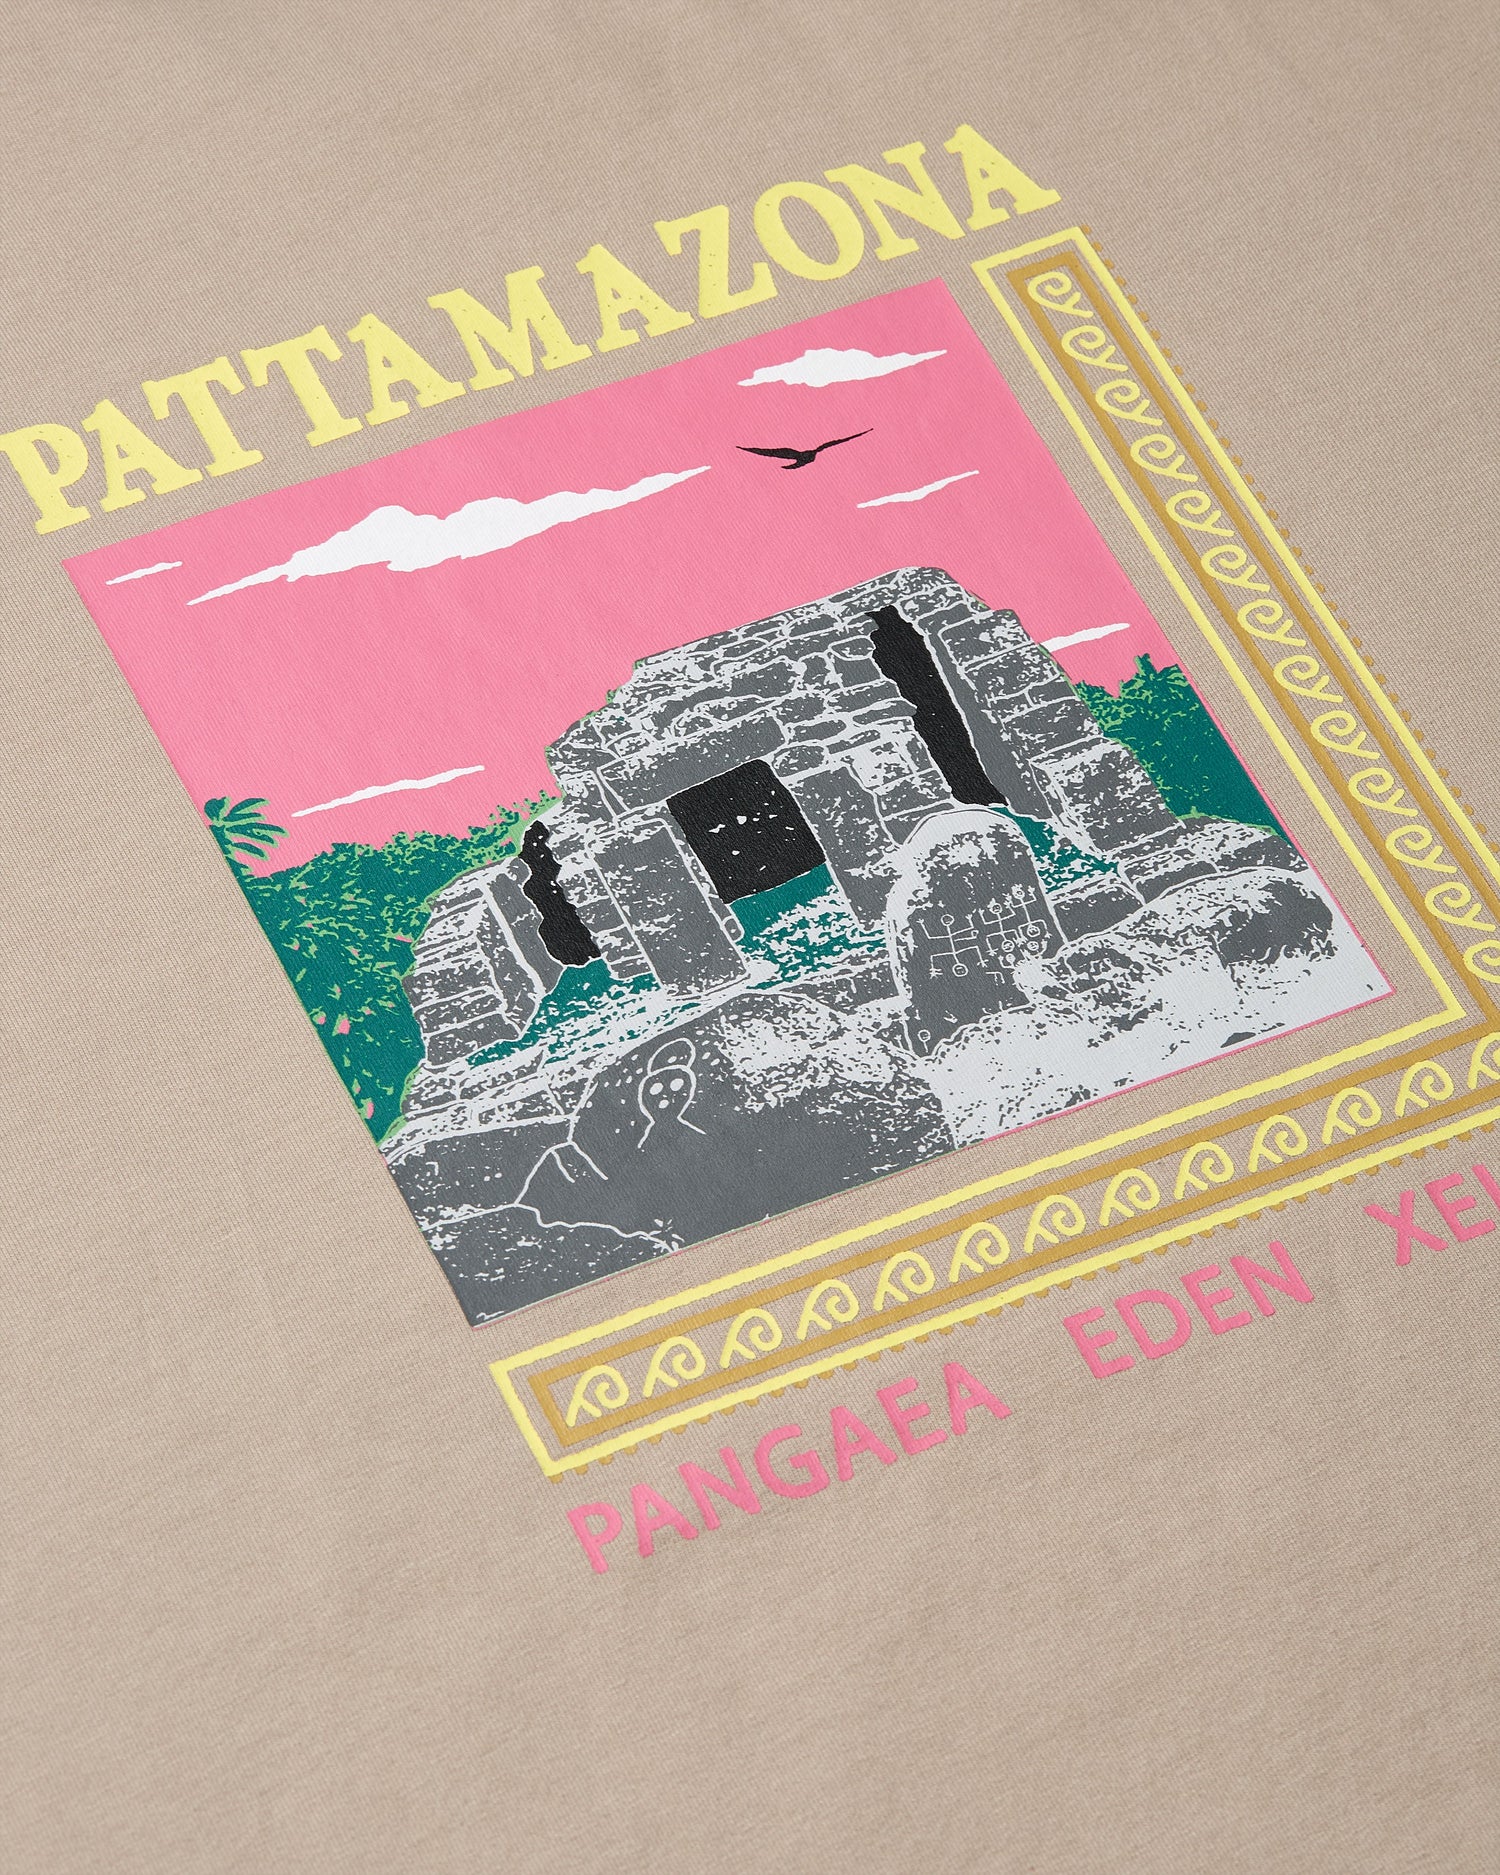 Maglietta Patta Pattamazona (Capra)